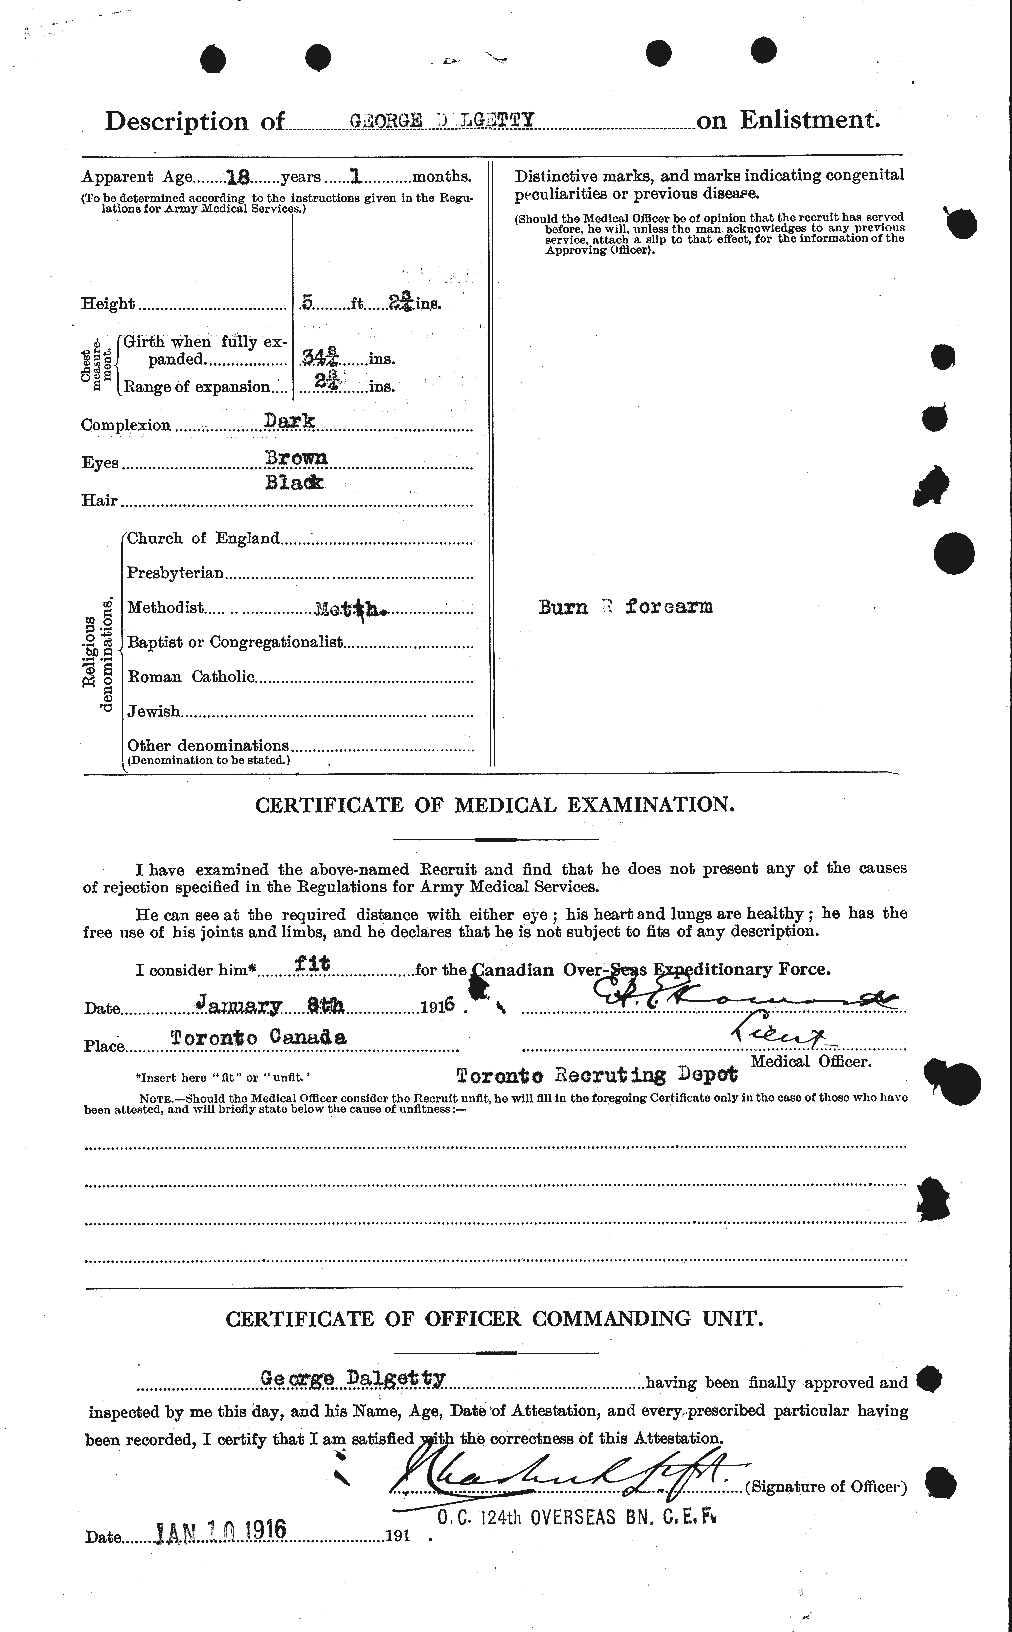 Dossiers du Personnel de la Première Guerre mondiale - CEC 280537b